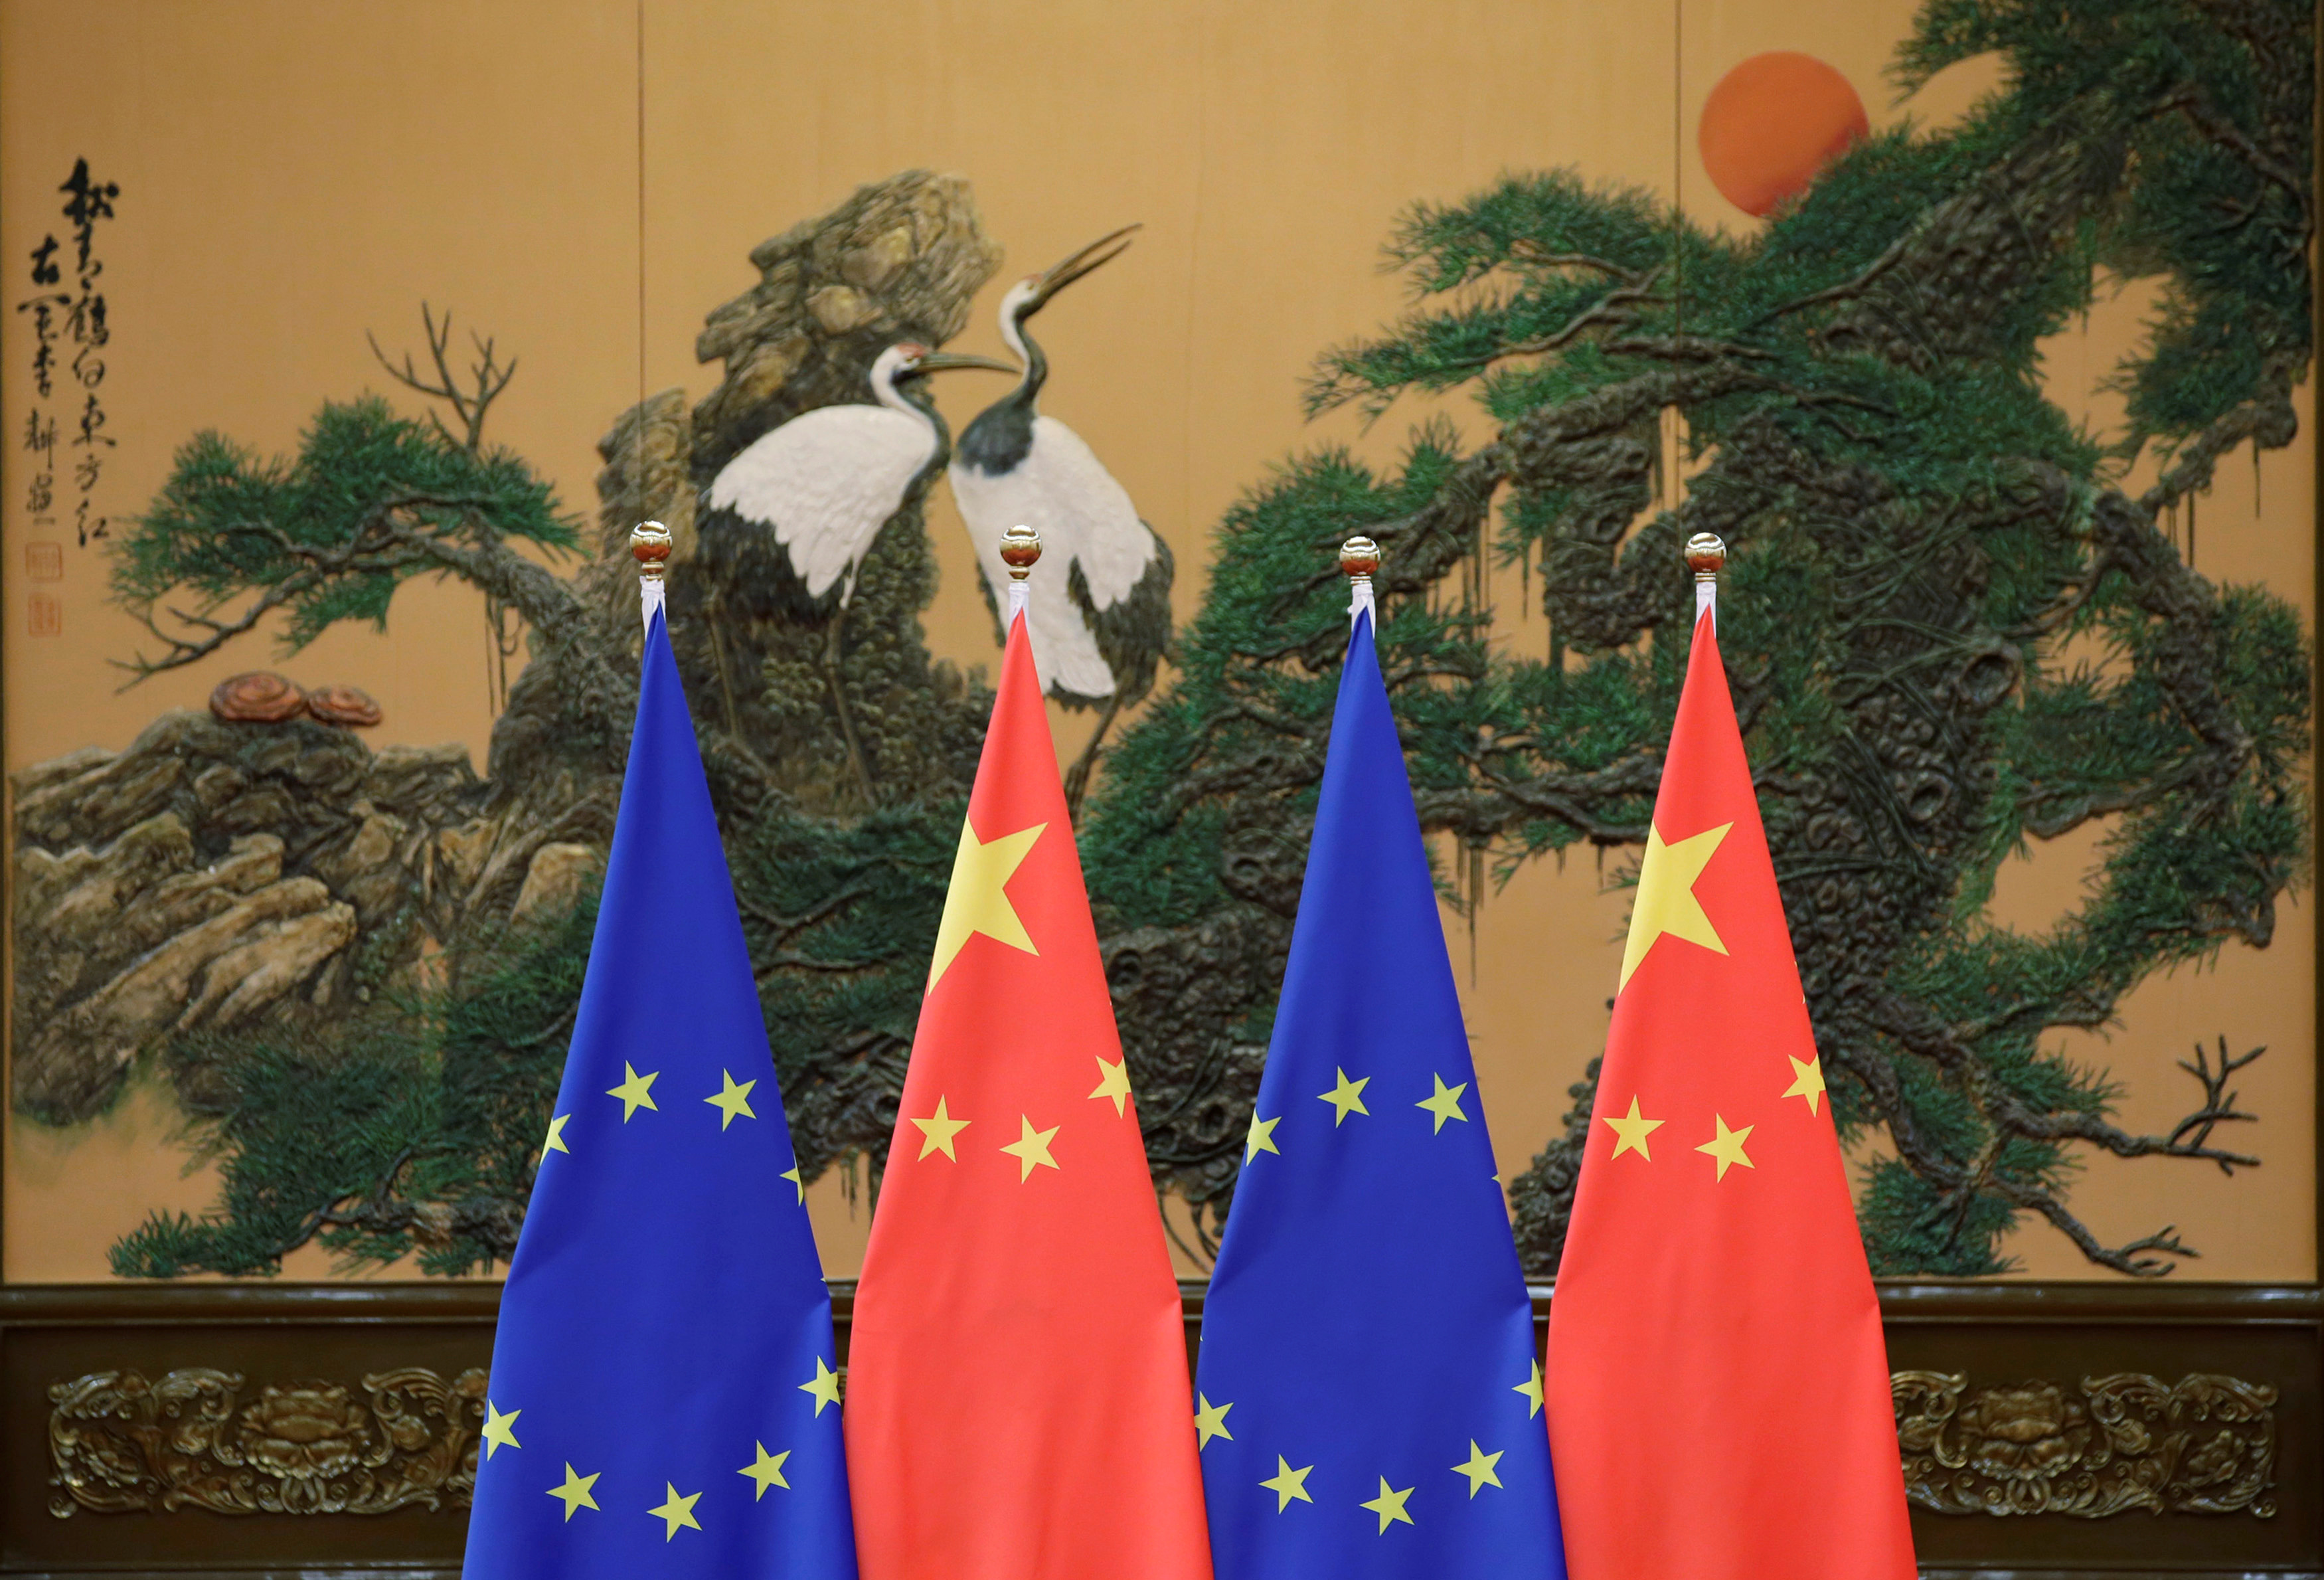 Les entreprises européennes font l'objet de discriminations en Chine, dénonce Bruxelles